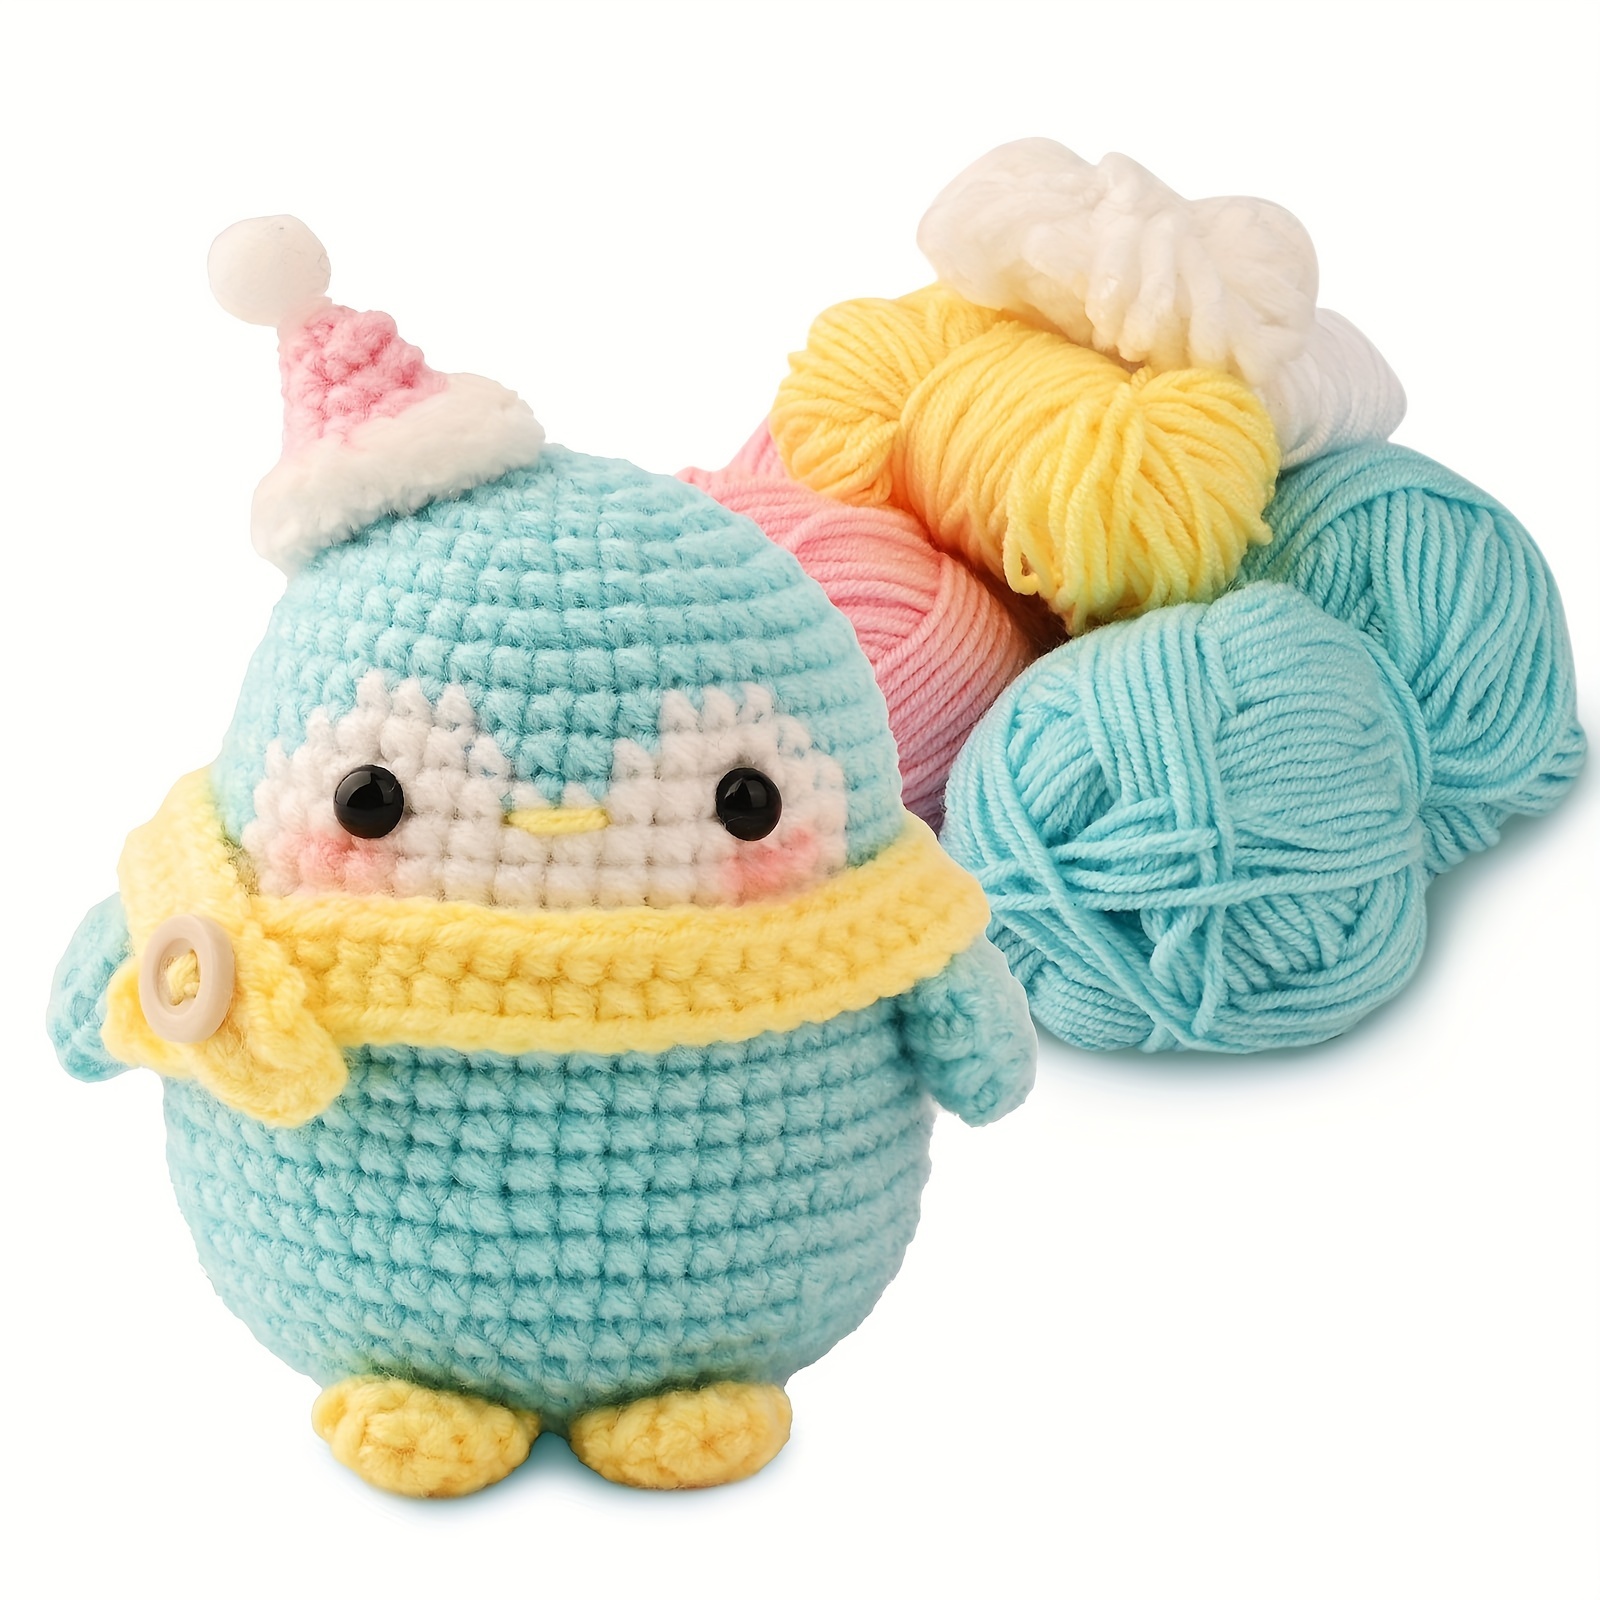  Animal Crochet Kit for Beginners, Crochet Starter Set